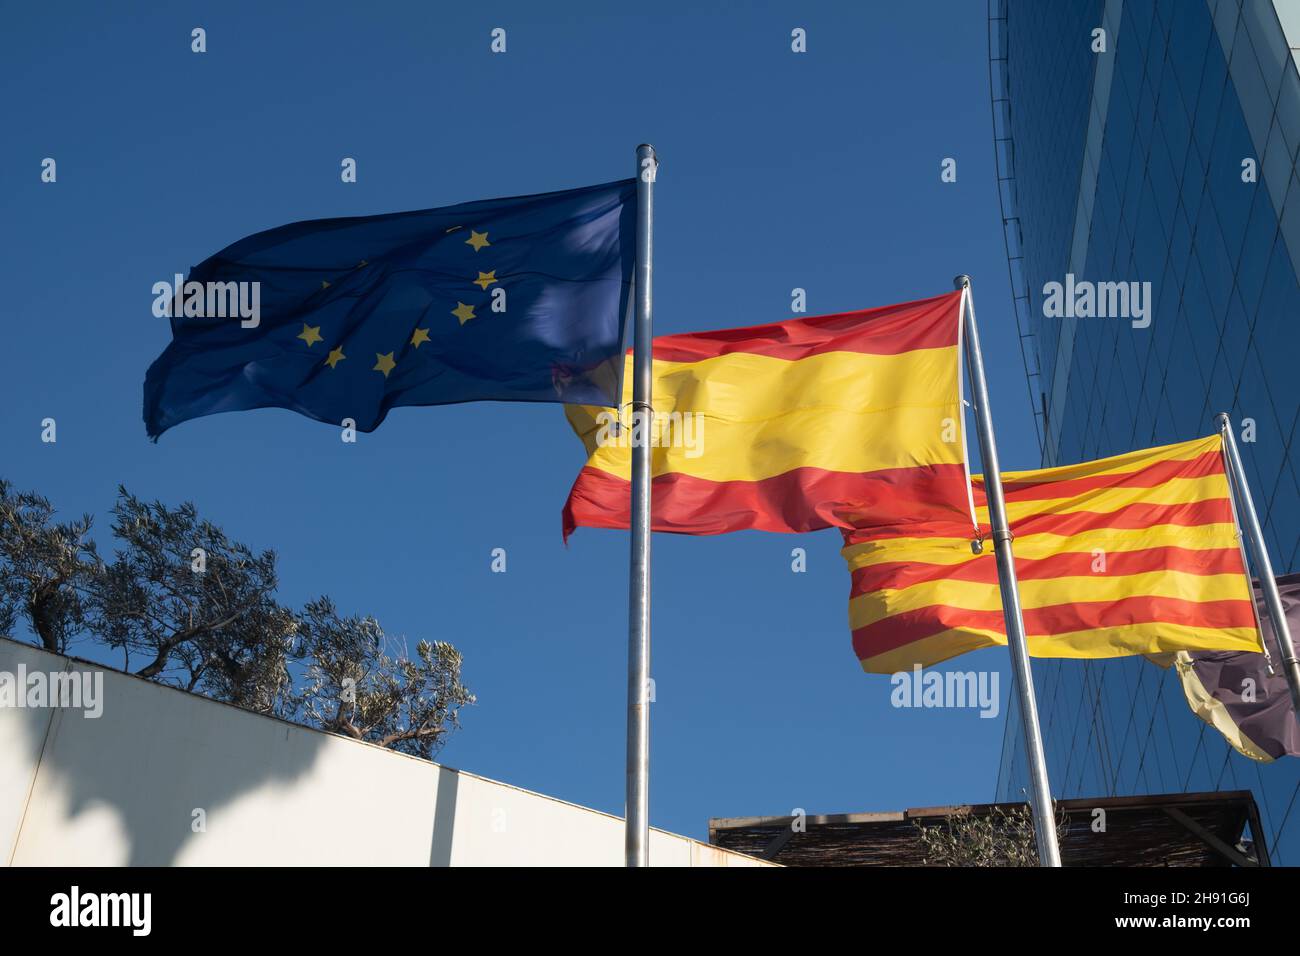 Banderas de la Unión Europea, España y Cataluña ondeando en el cielo Foto de stock